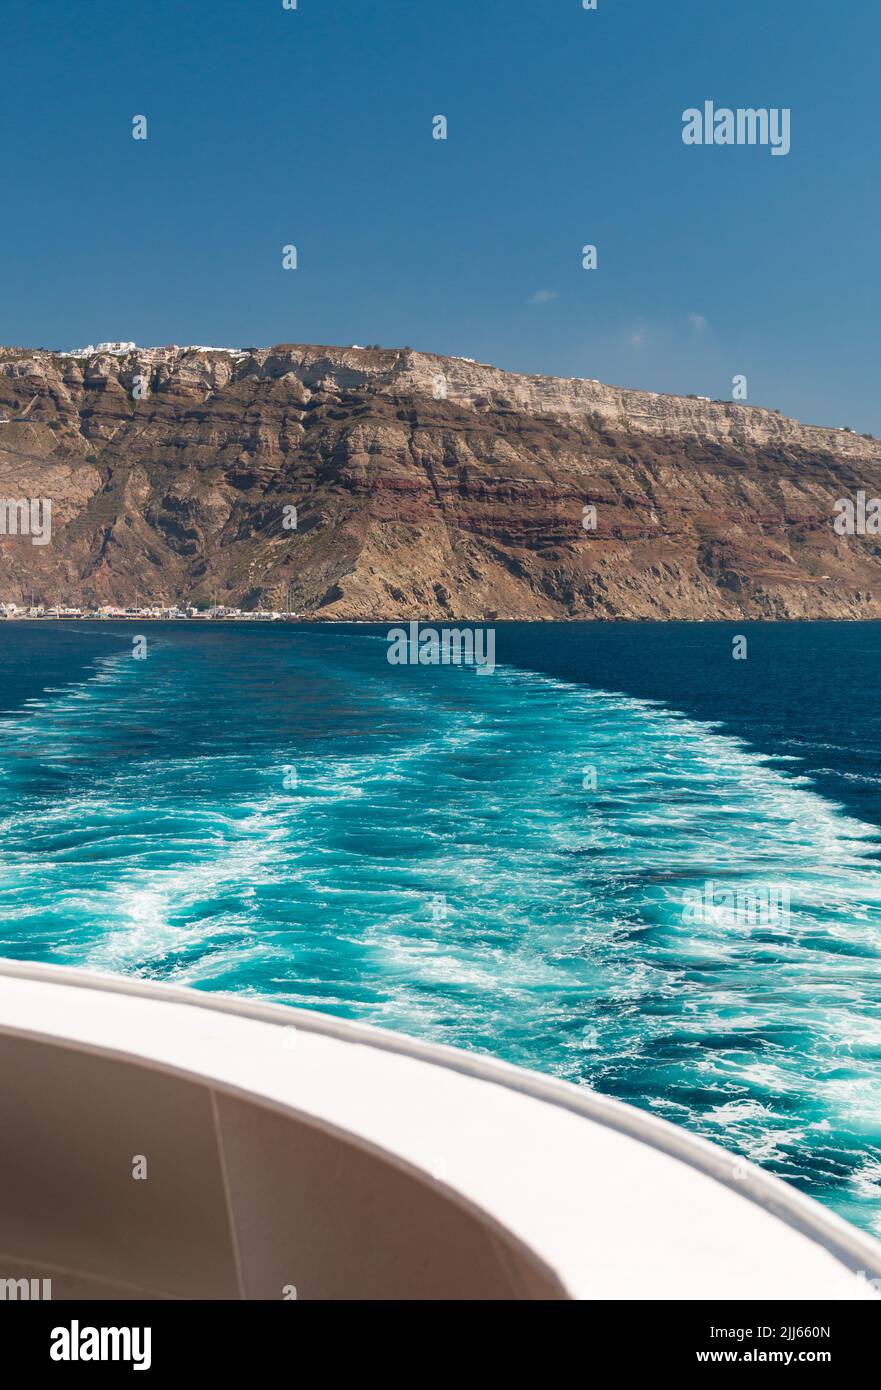 Vista de la isla de Santorini desde un barco Foto de stock